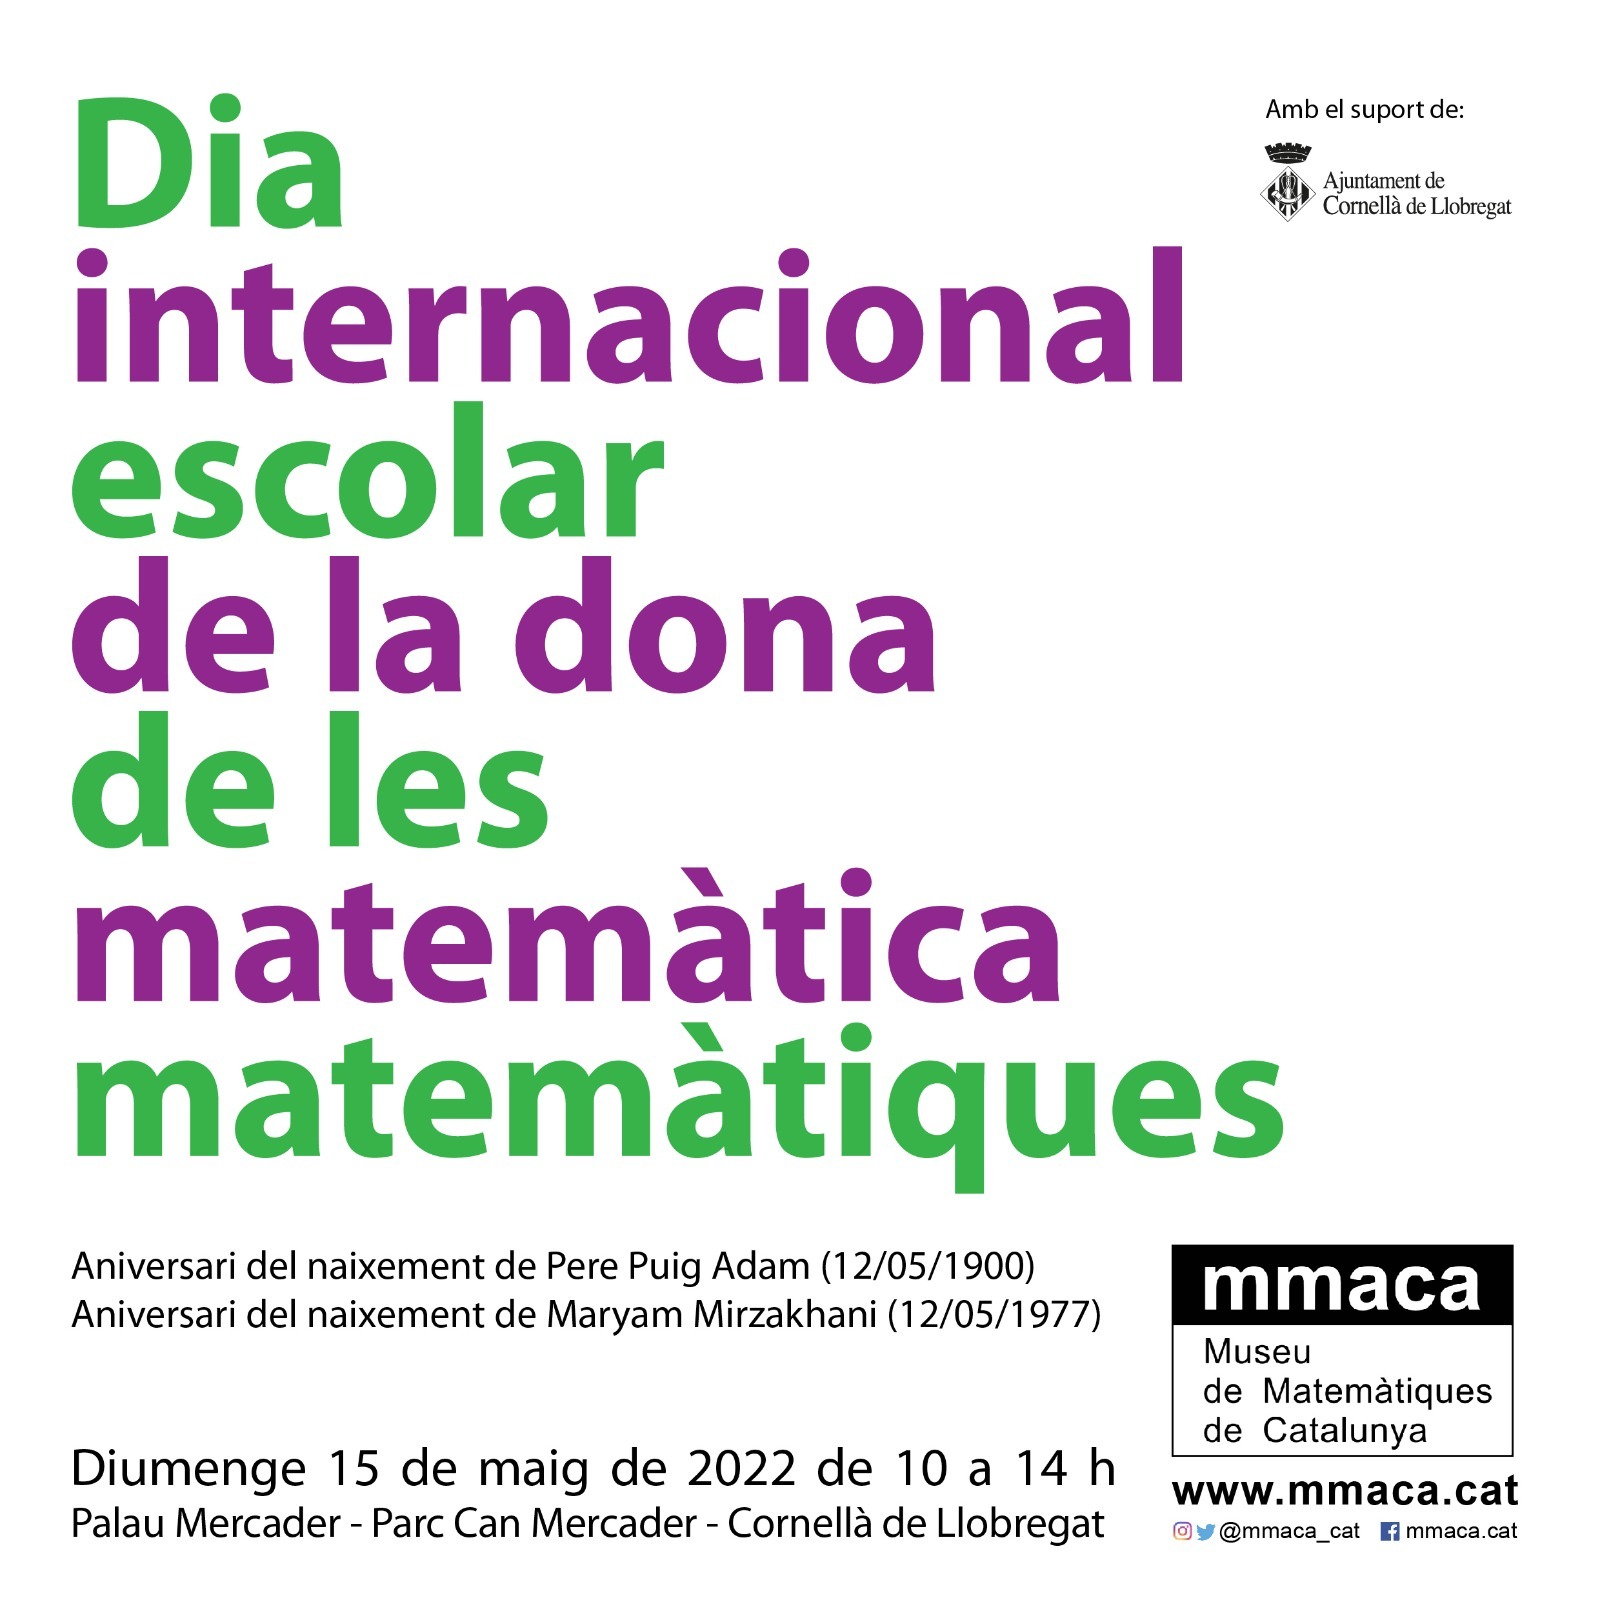 Dia internacional de la dona matemàtica